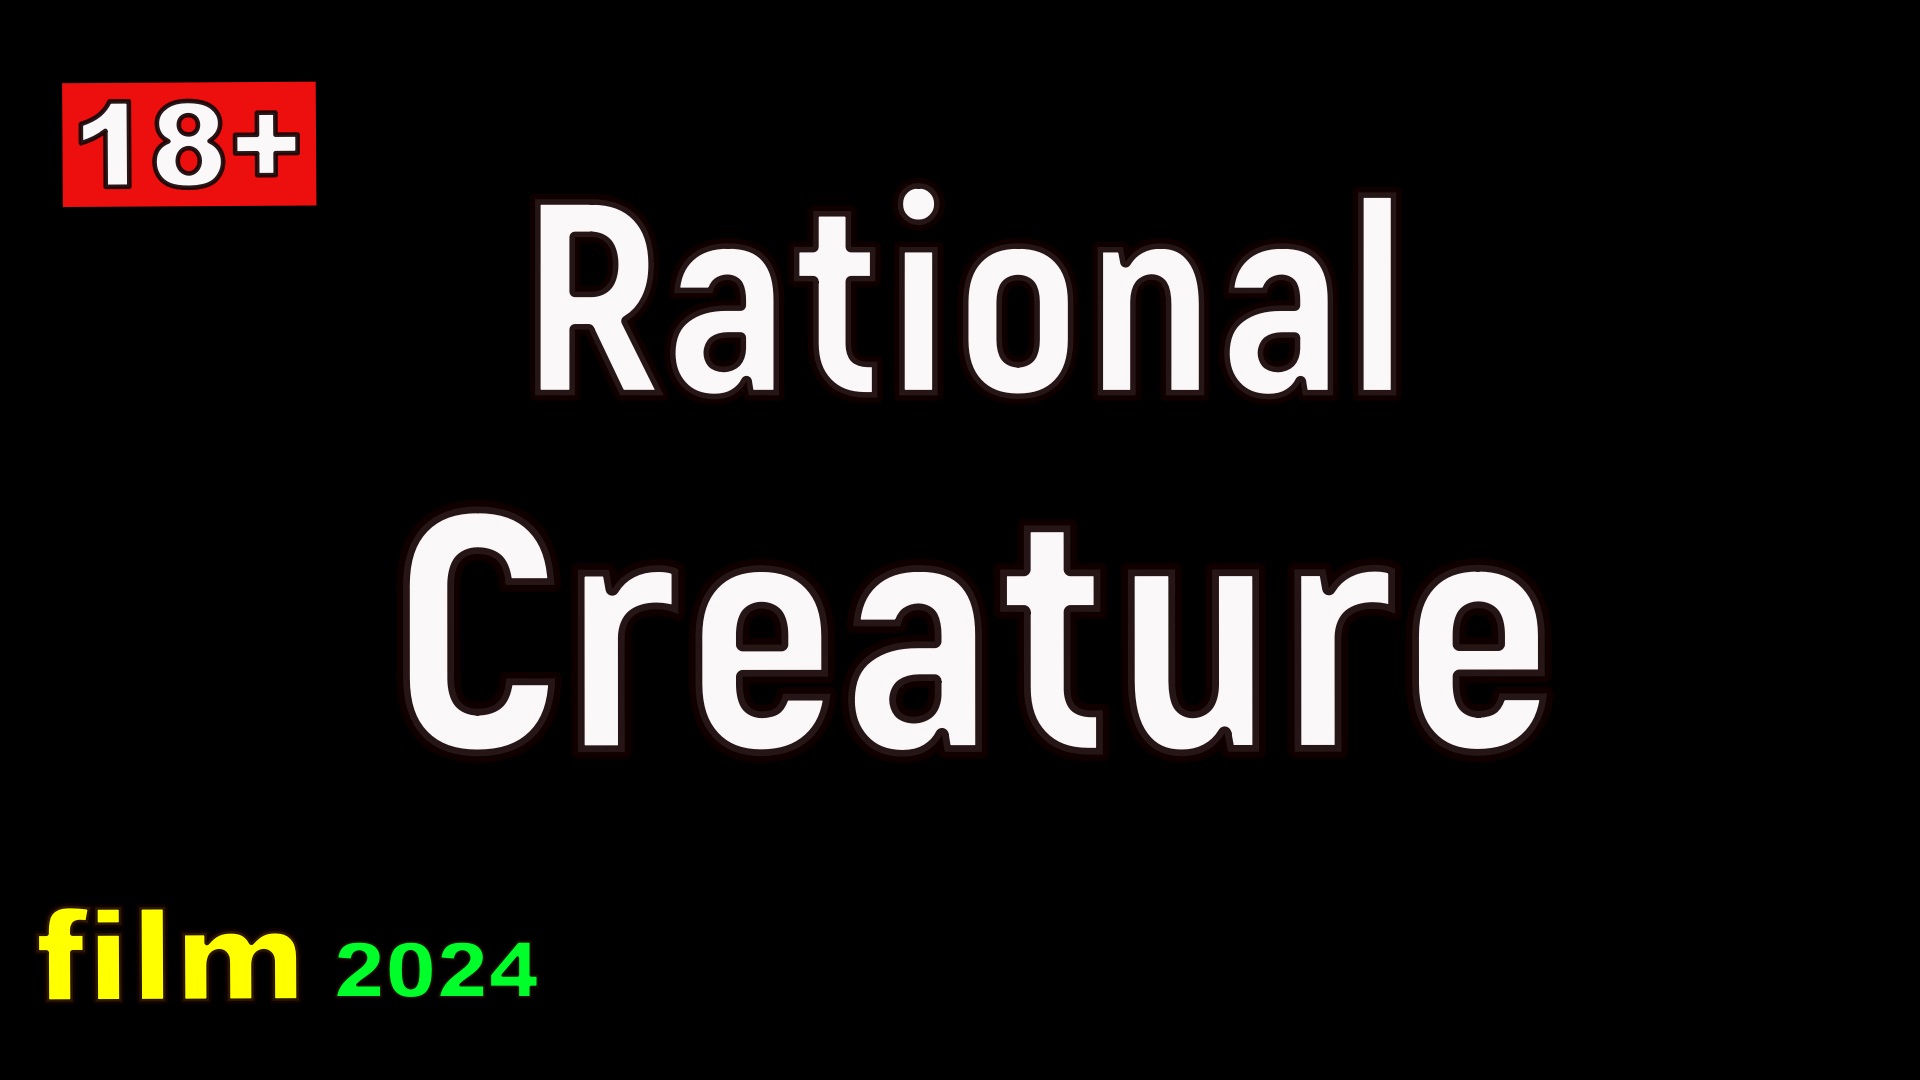 Rational Creature  film 2024